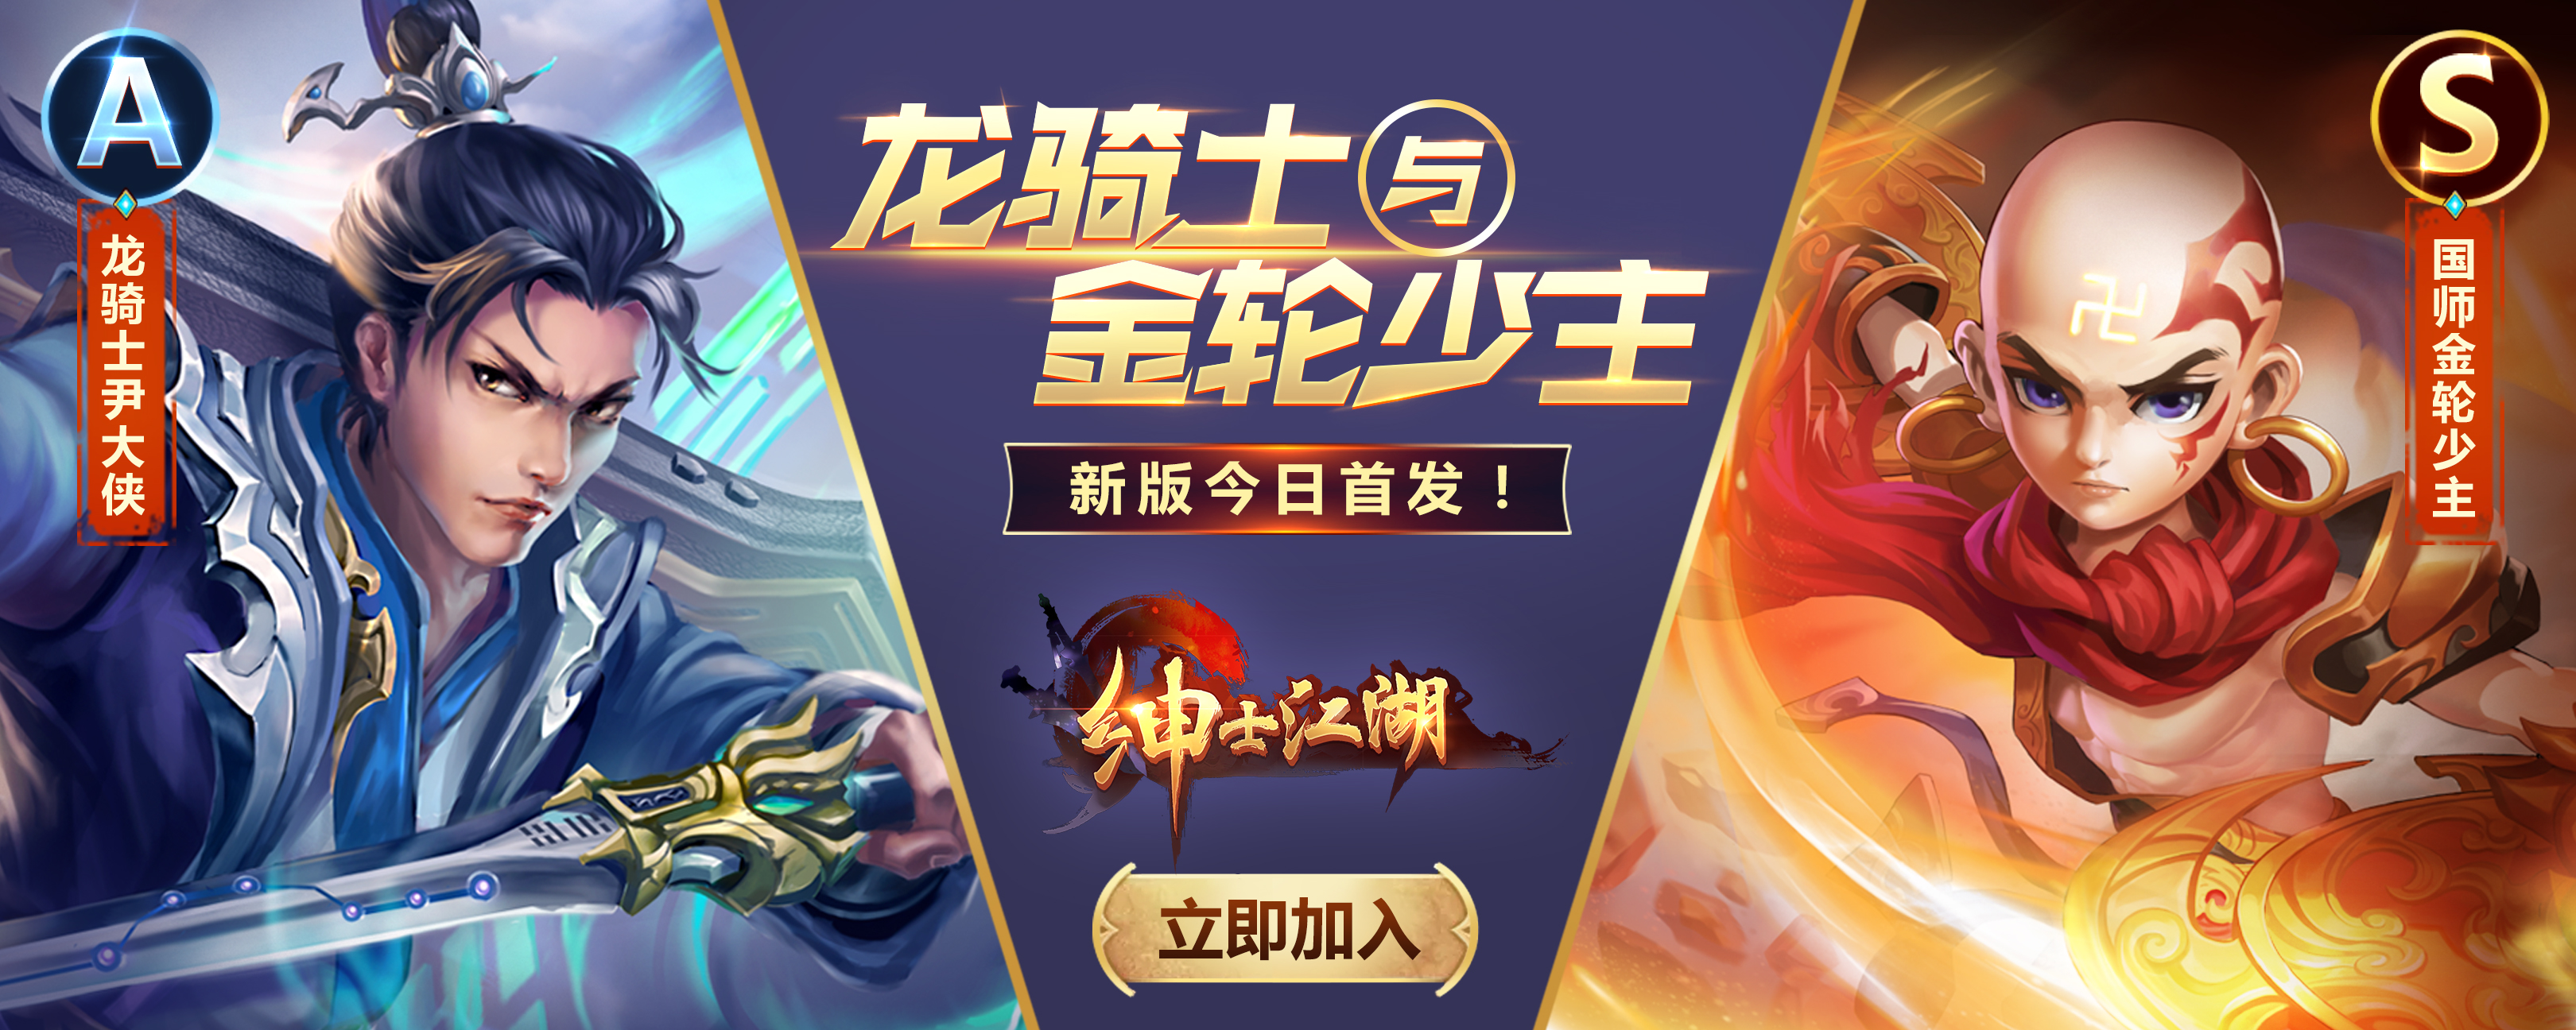 绅士江湖更新版本——龙骑士与金轮少主 即将来袭！！